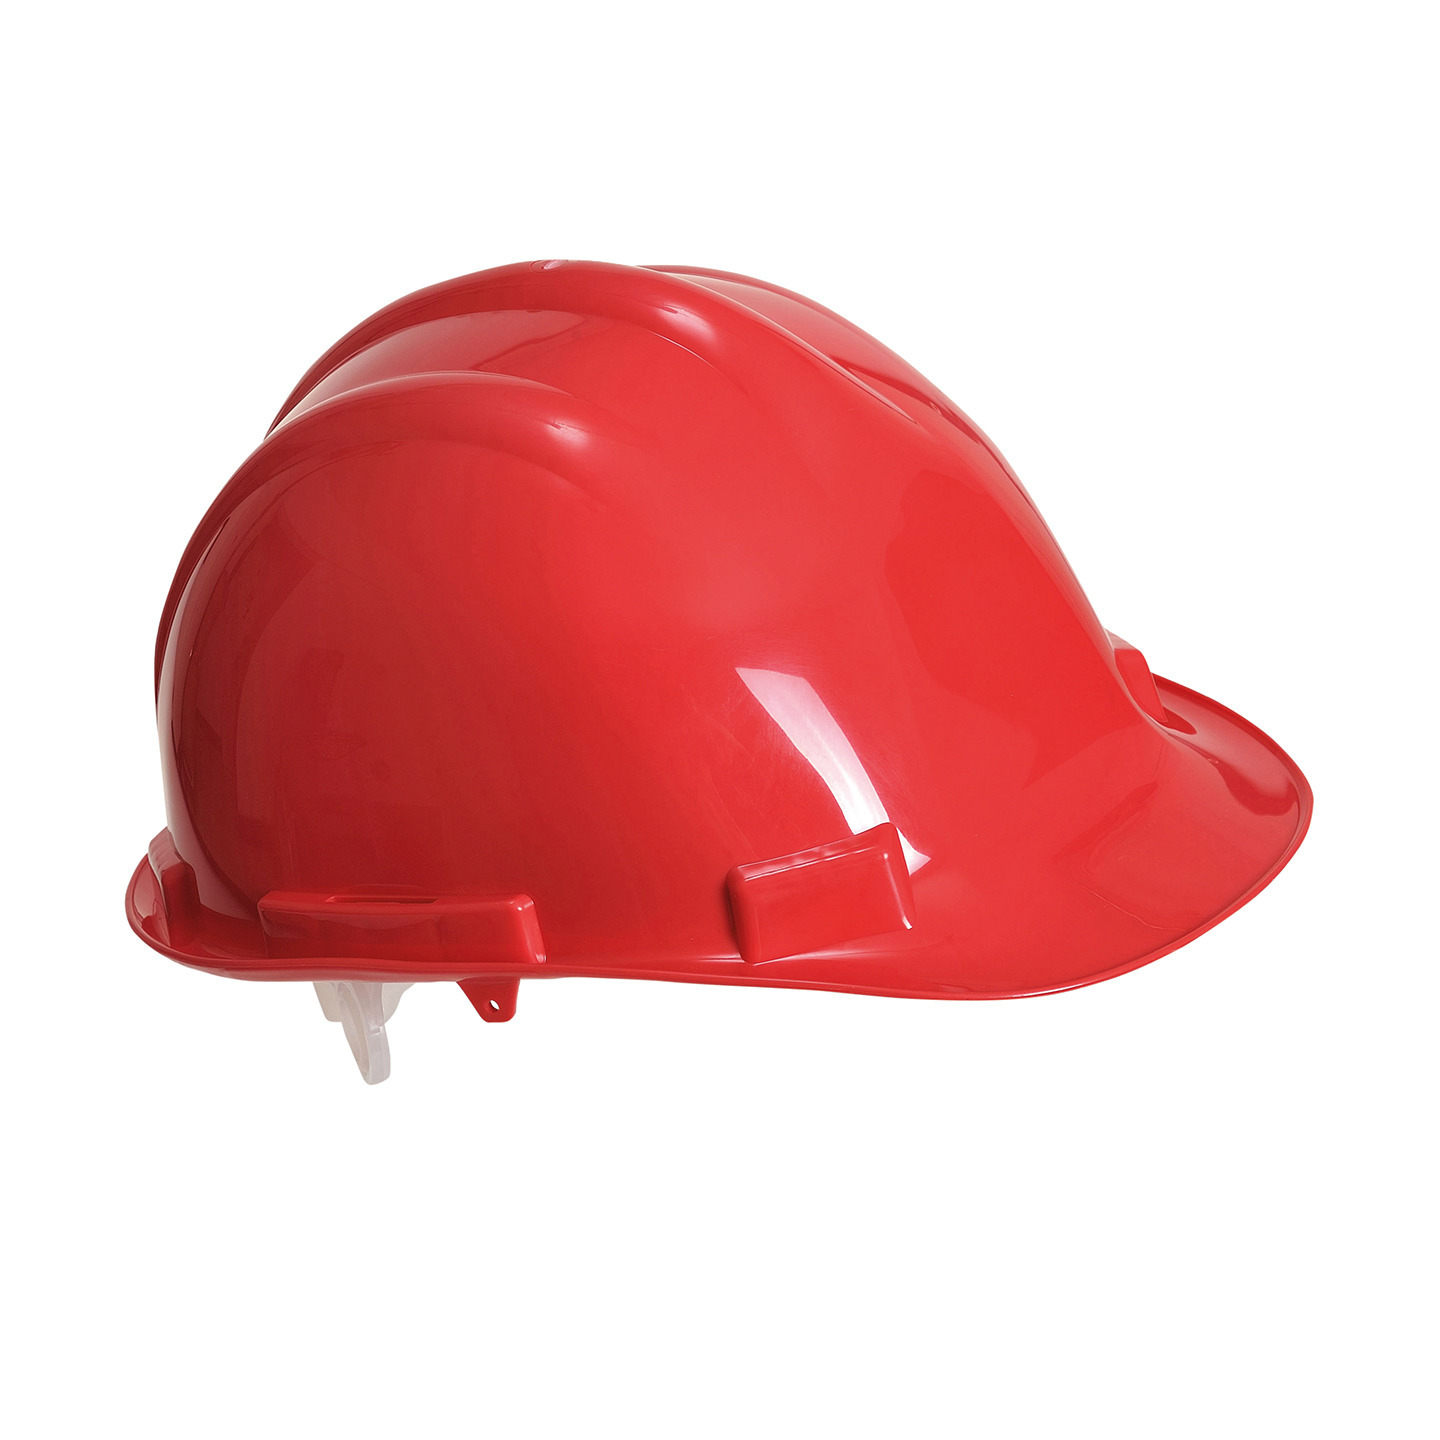 Veiligheidshelm-bouwhelm hoofdbescherming rood verstelbaar 55-62 cm